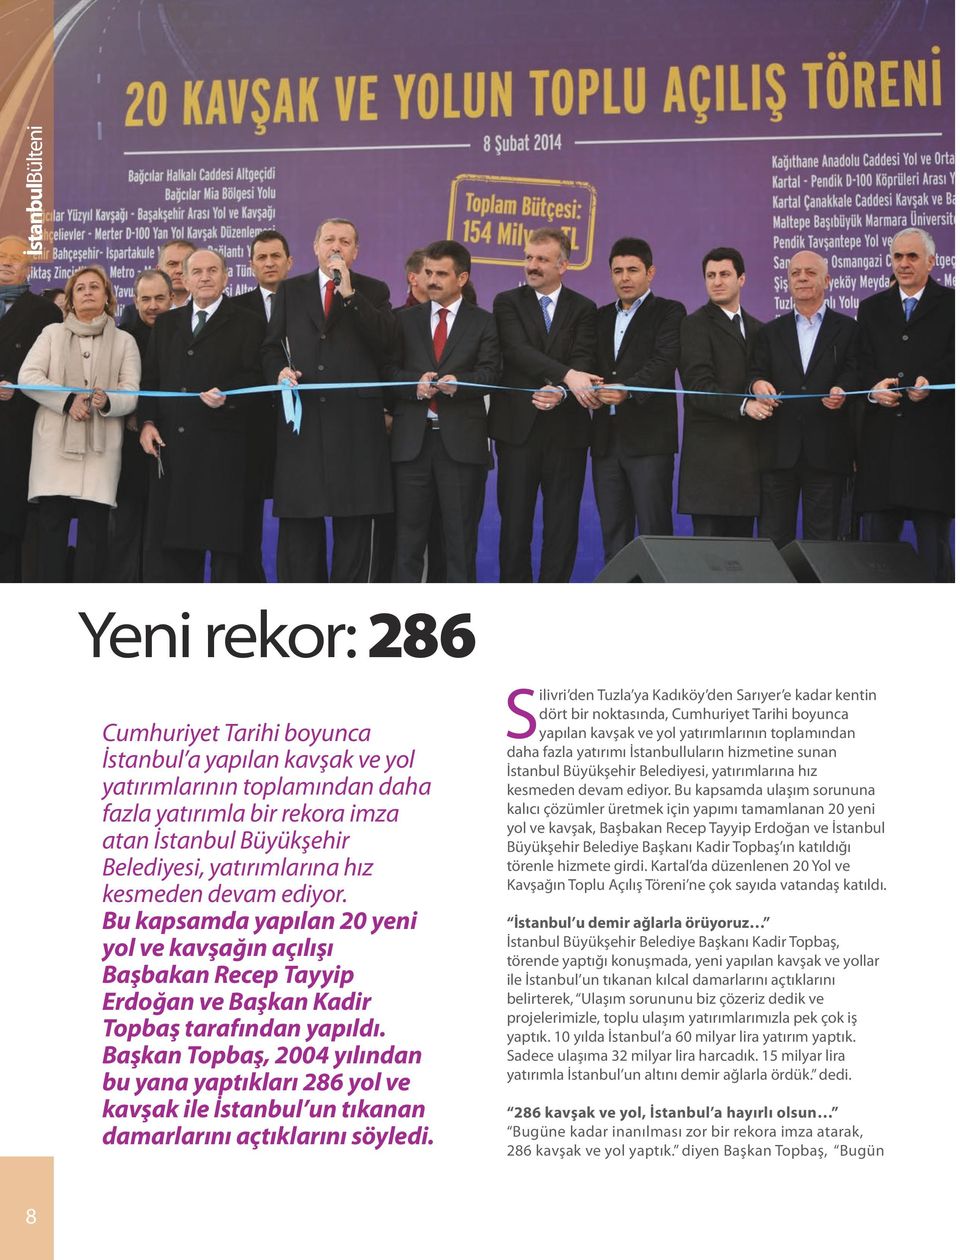 Başkan Topbaş, 2004 yılından bu yana yaptıkları 286 yol ve kavşak ile İstanbul un tıkanan damarlarını açtıklarını söyledi.